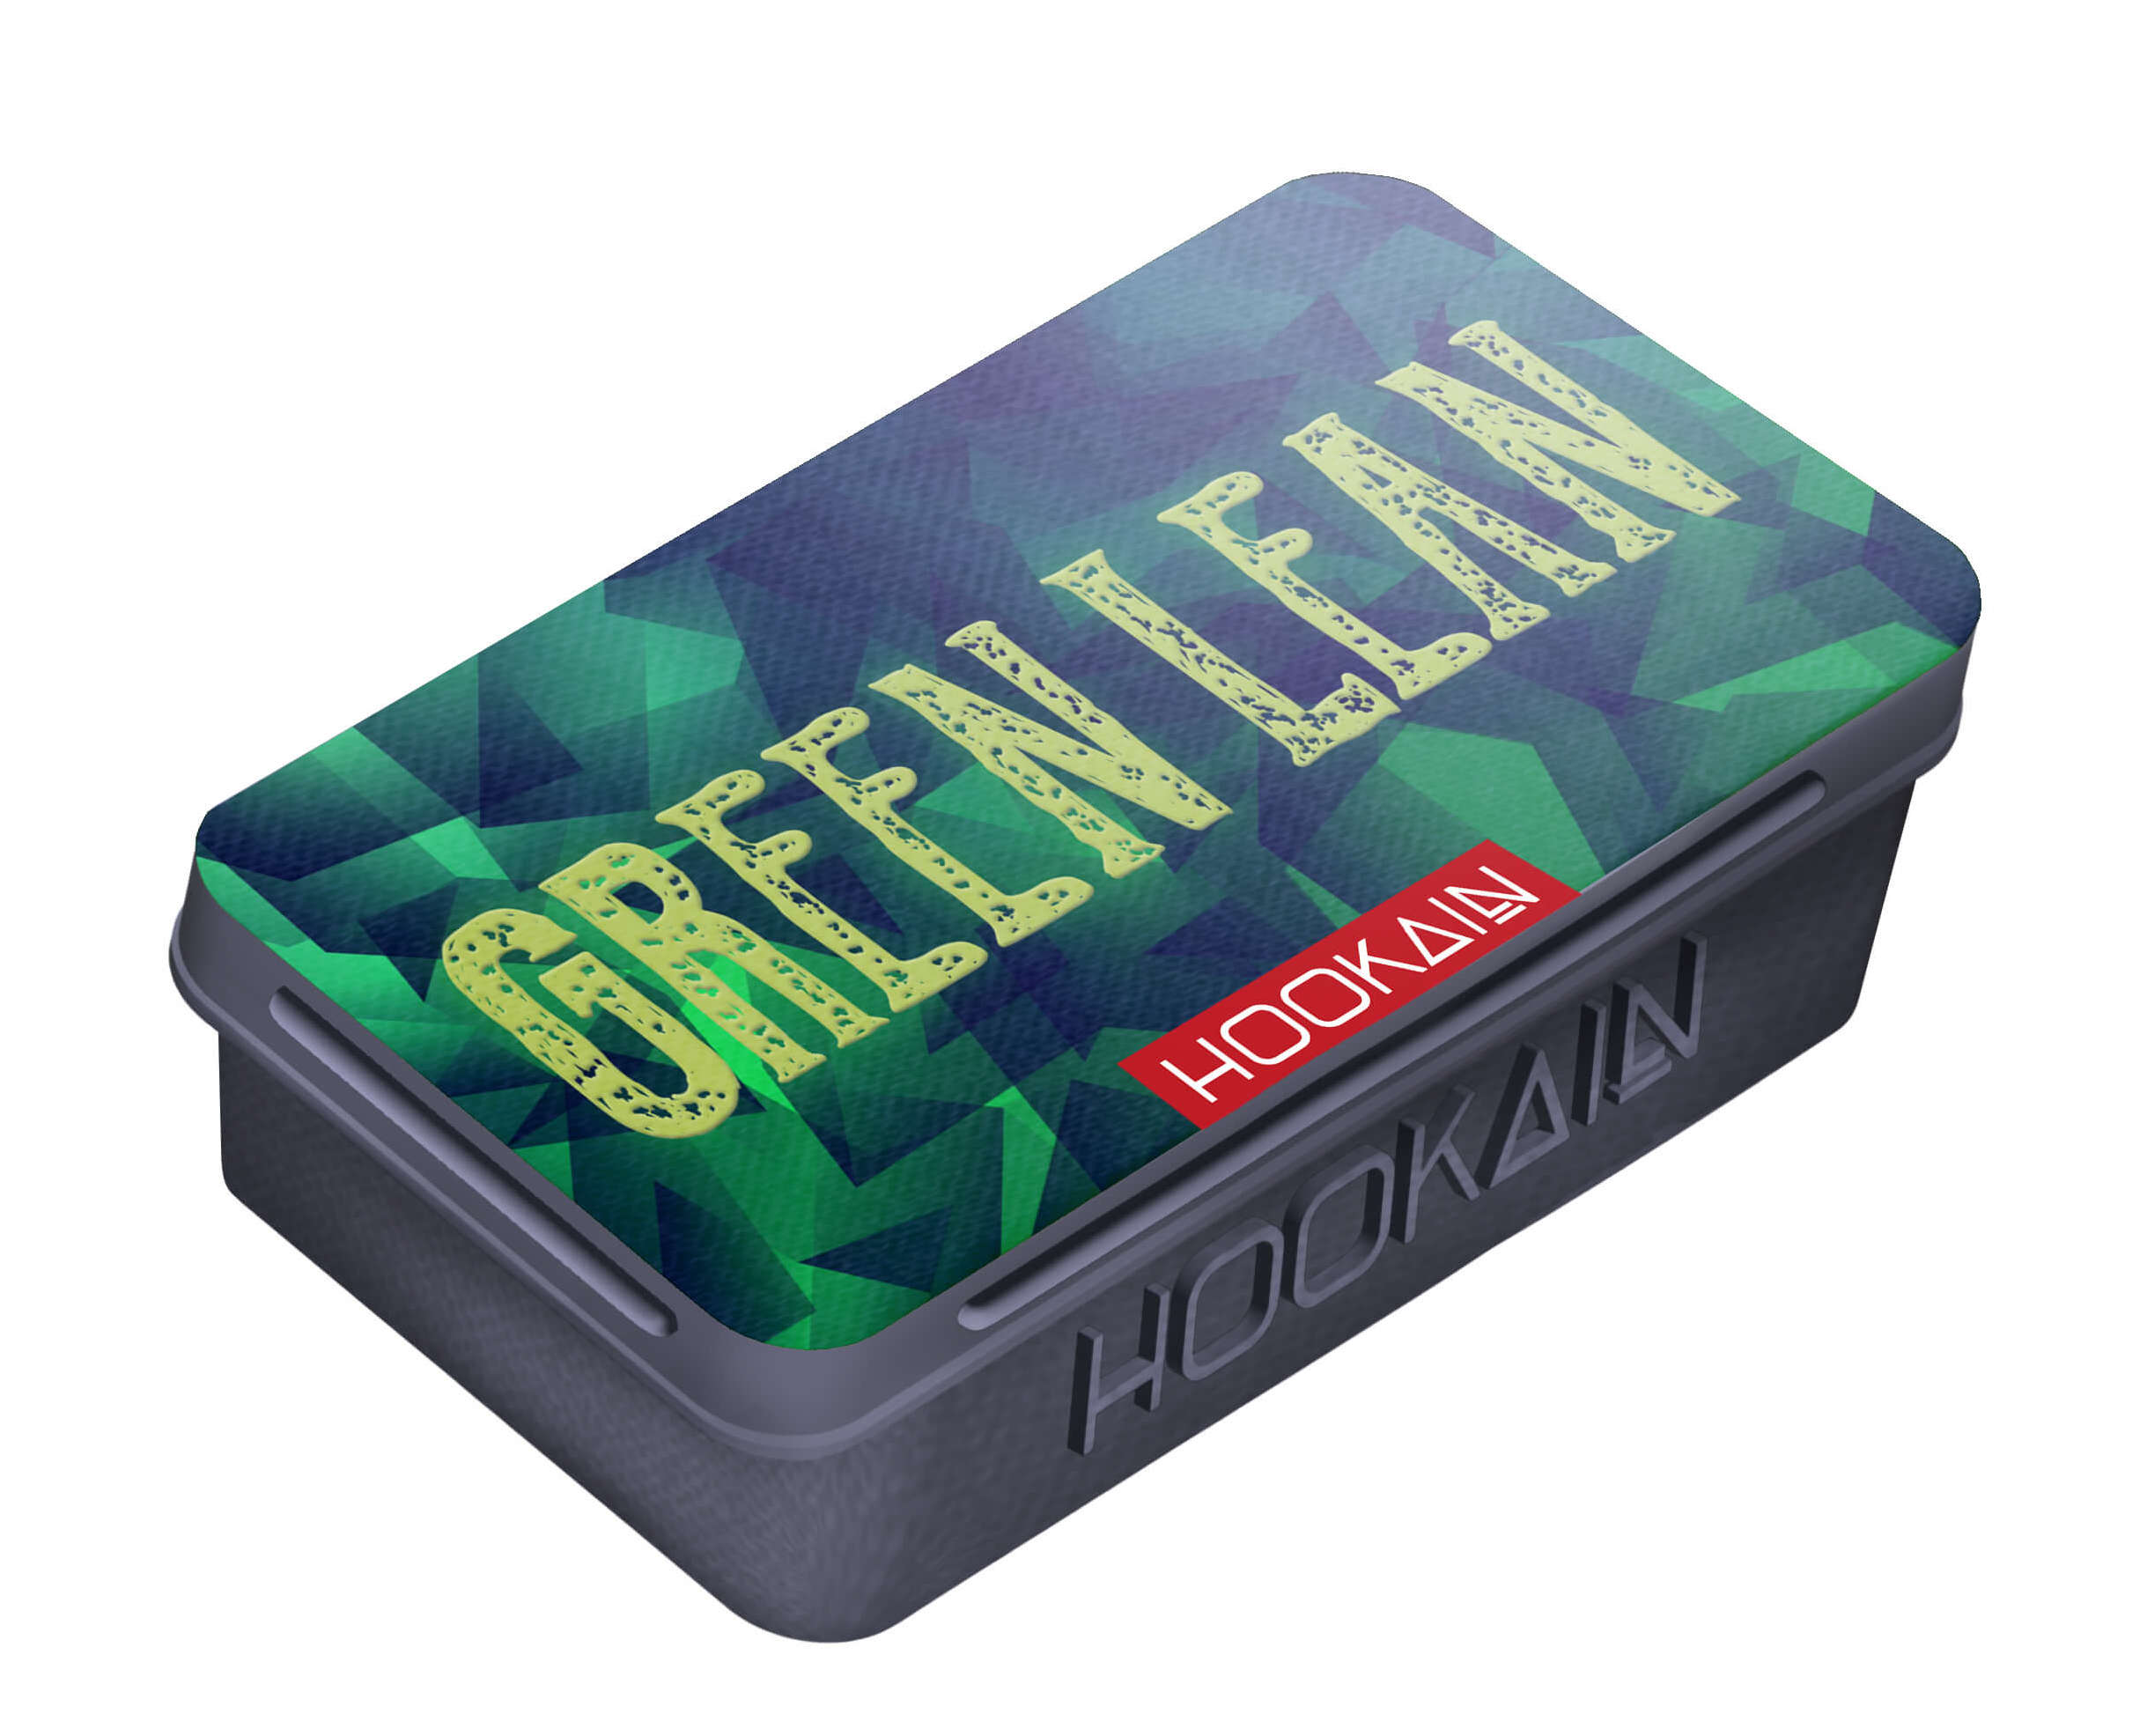 Hookain Tabak Green Lean 25g